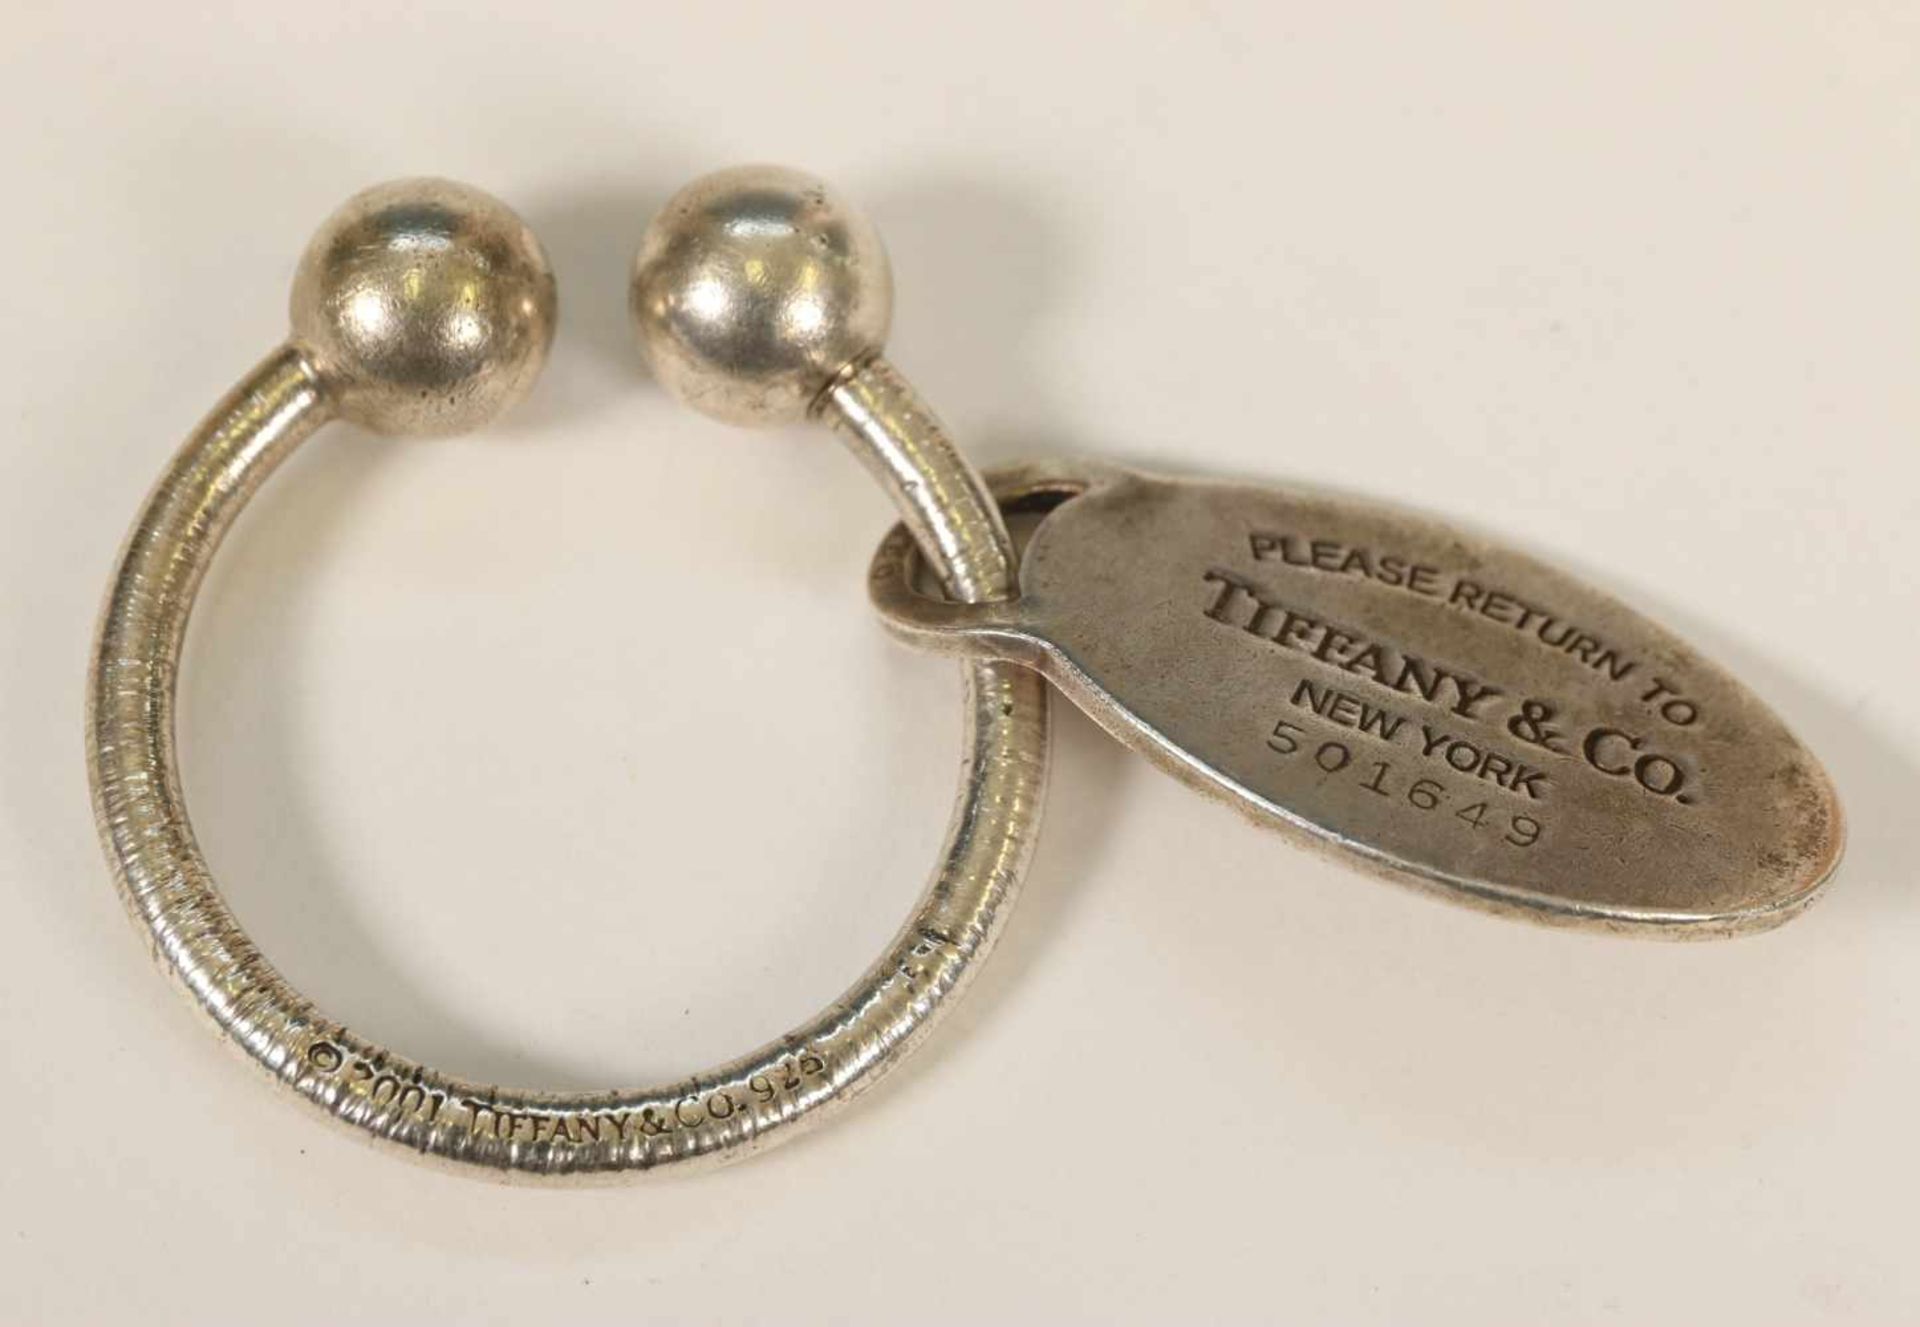 Verenigde staten, Tiffany New York sleutelhanger,sleutelhanger hoefijzervormig met afdraaibare - Bild 2 aus 3